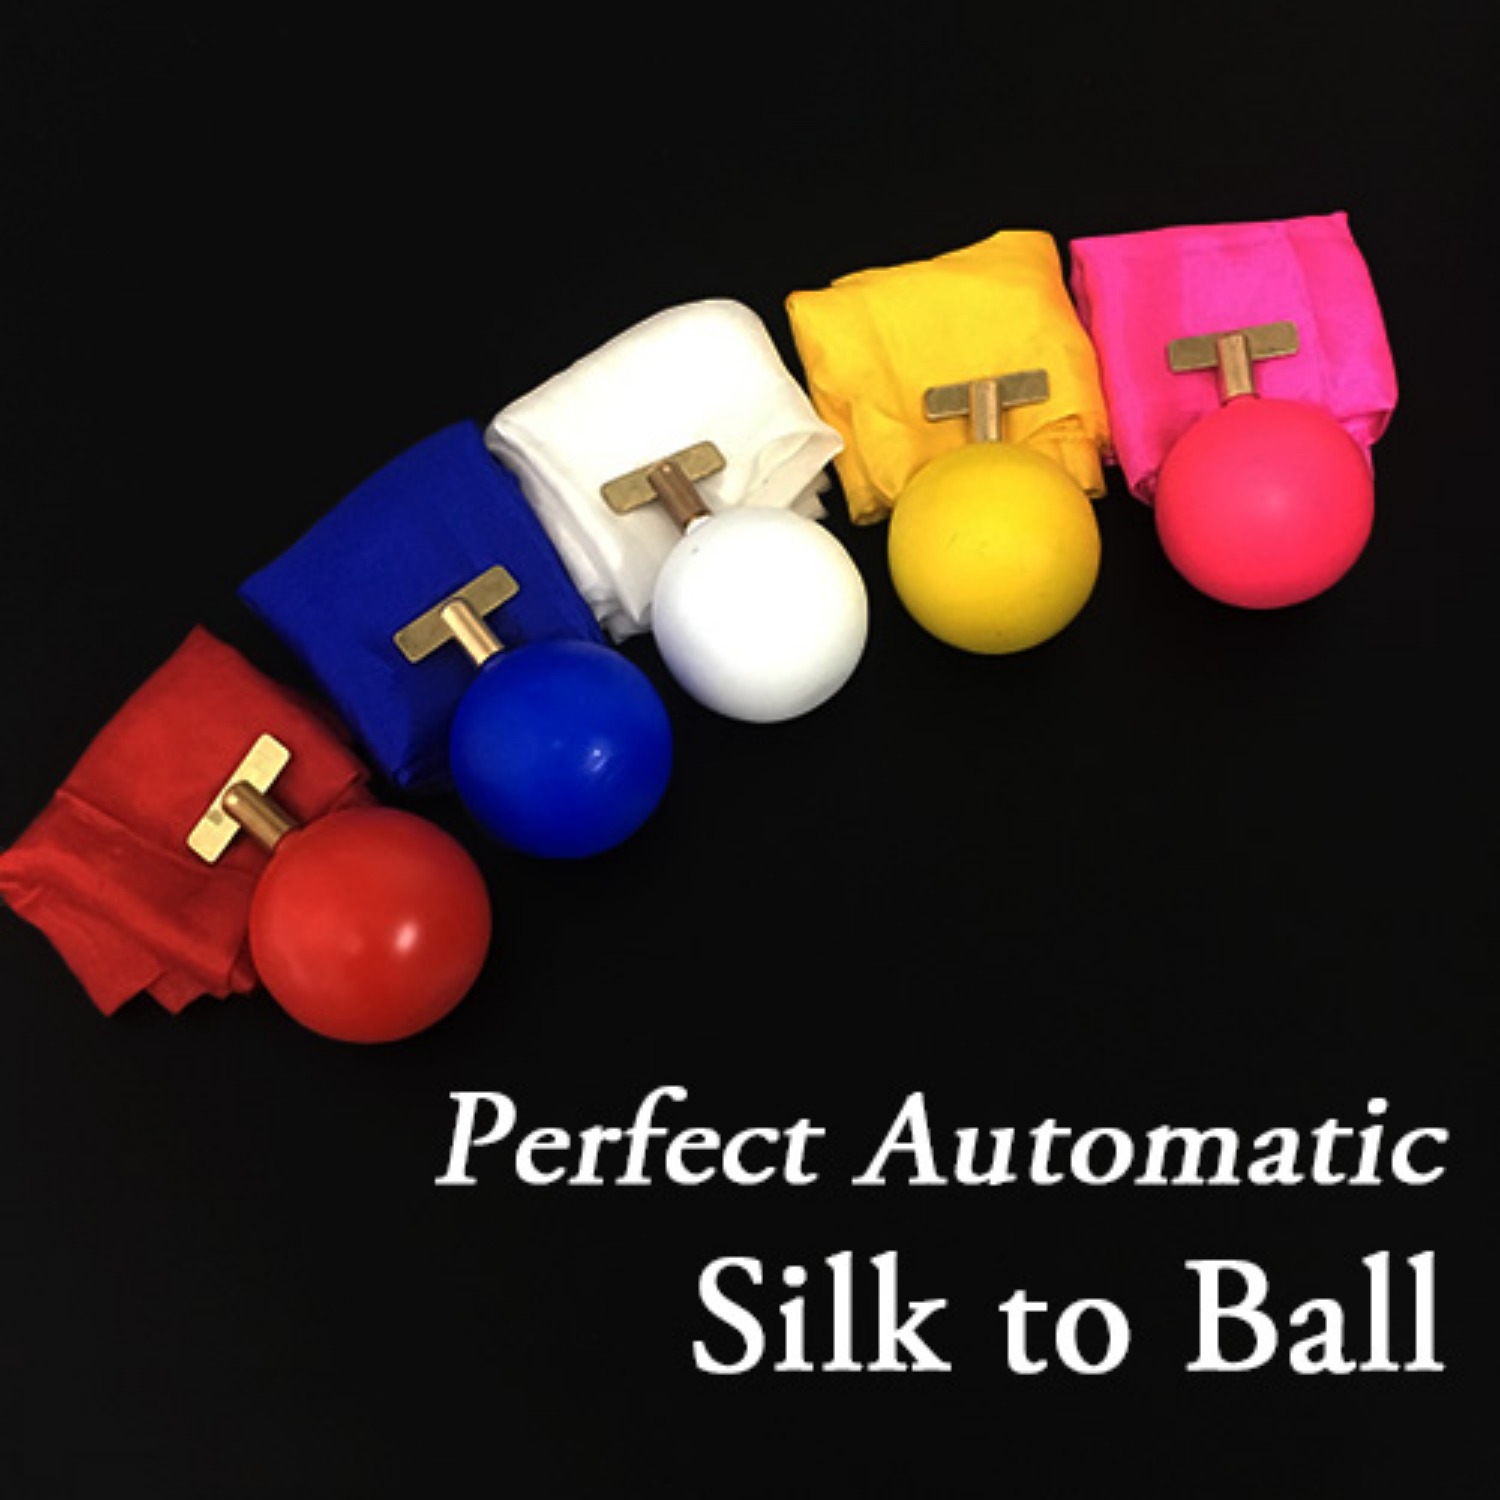 [퍼펙트실크투볼]Perfect Automatic Silk to Ball  실크가 순식간에 공으로 바뀝니다. partyn